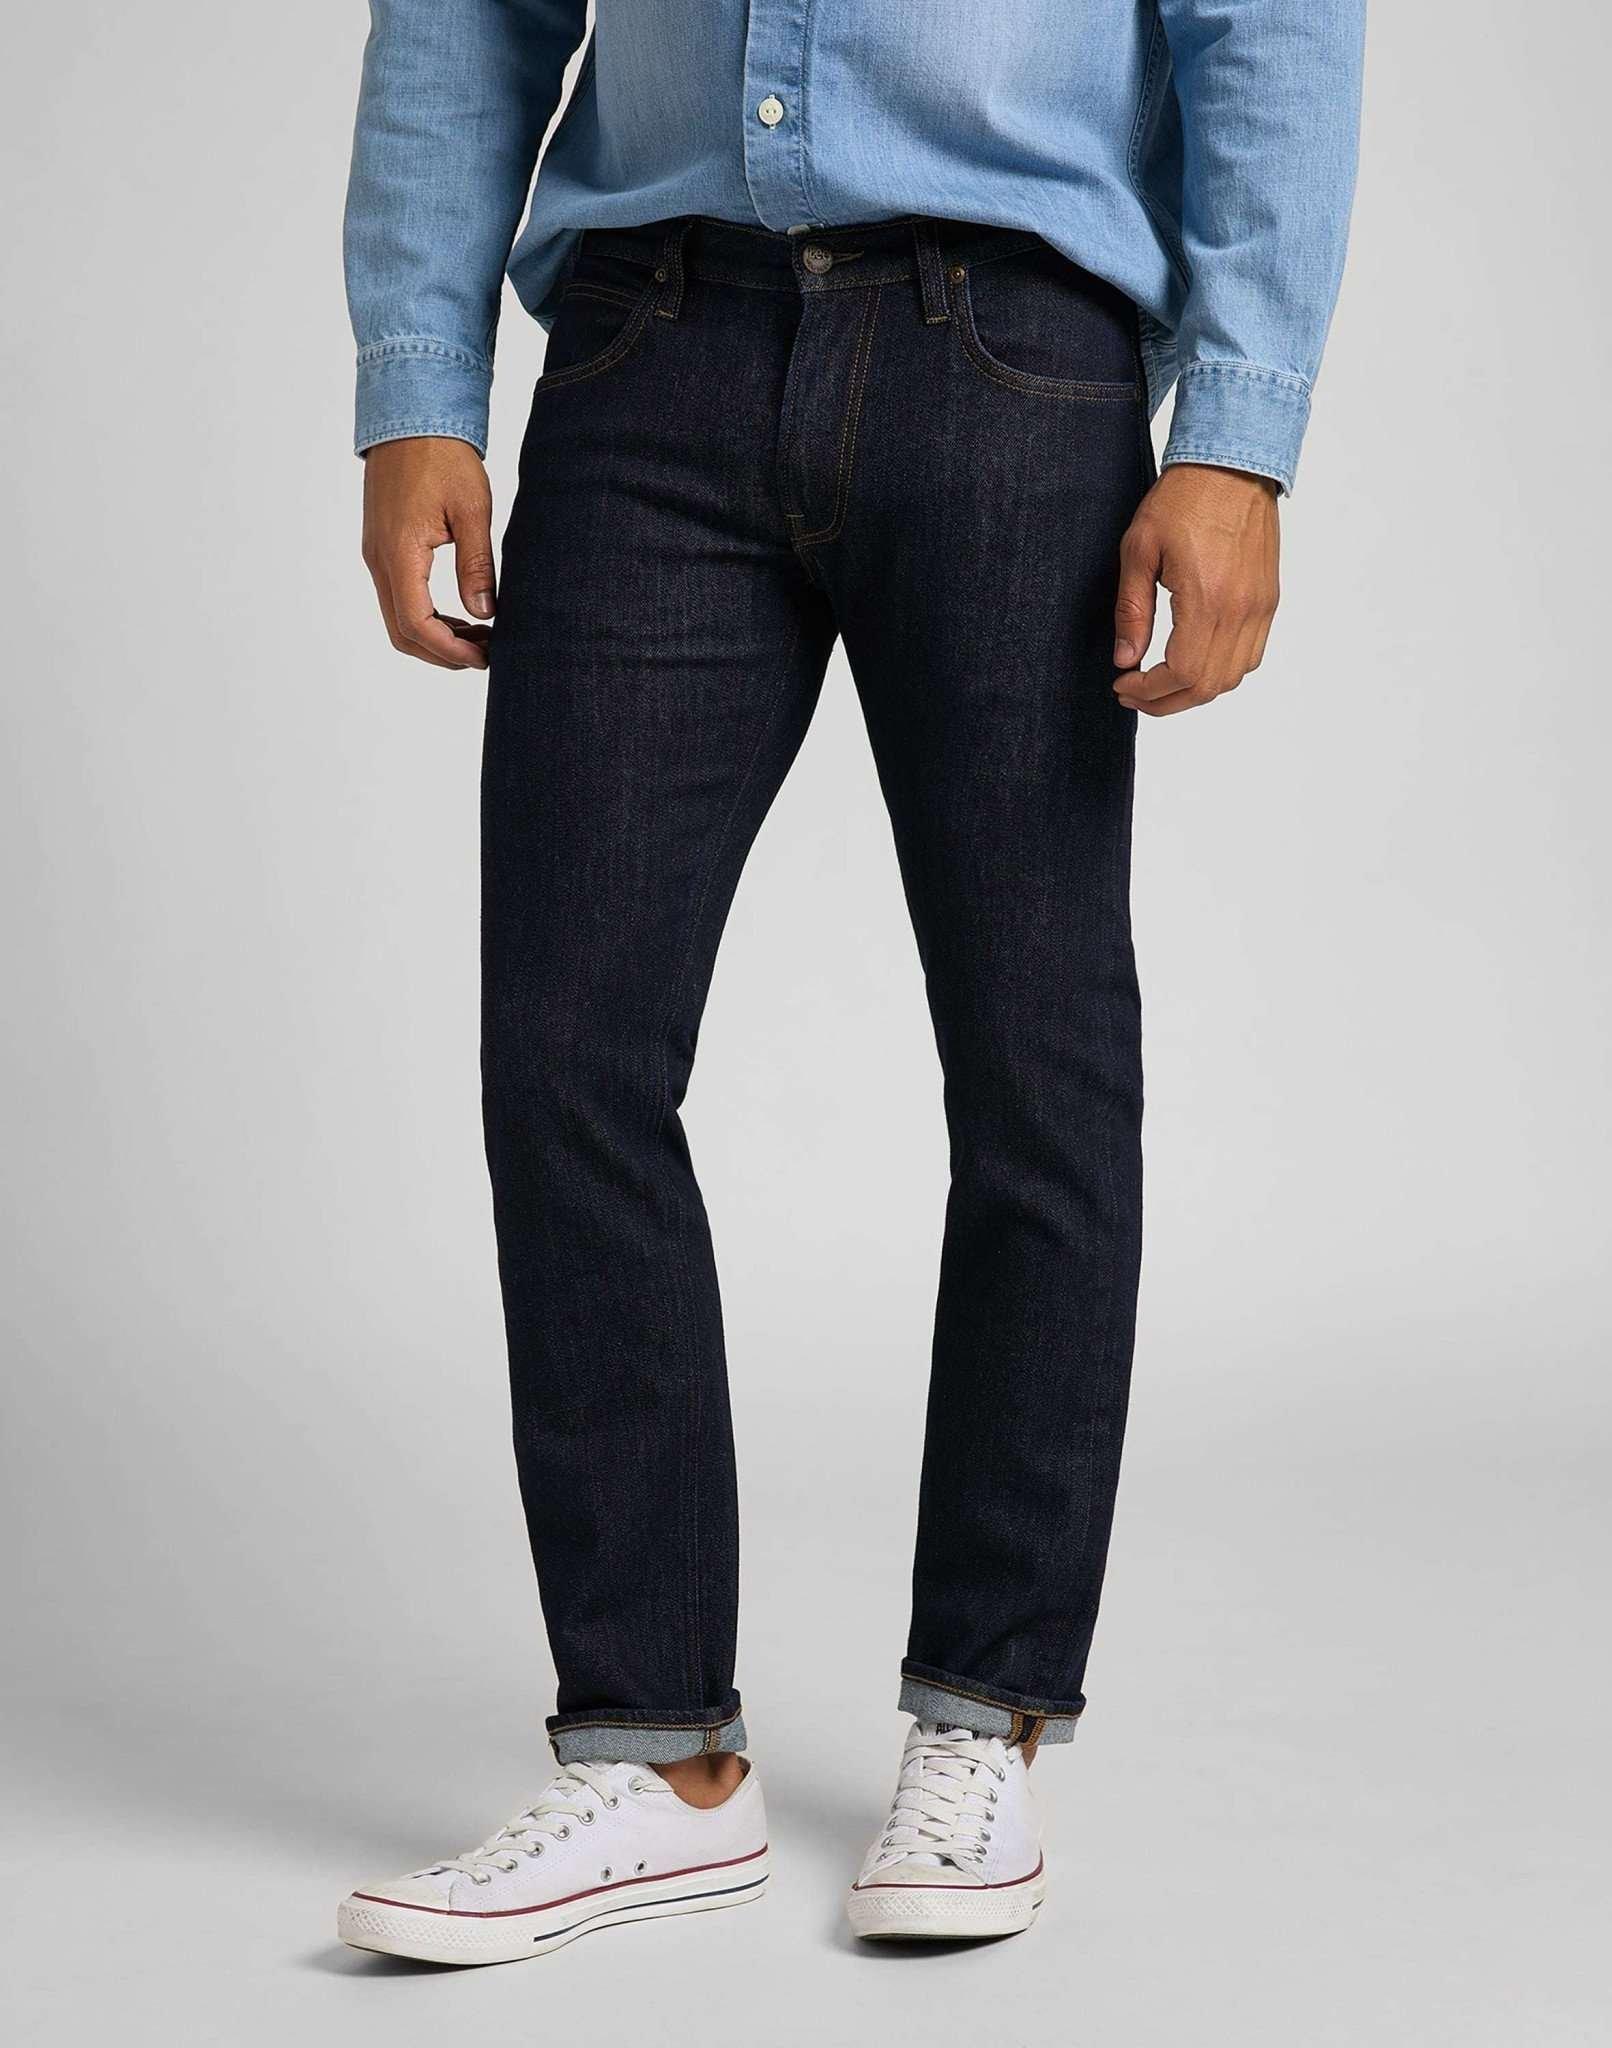 Jeans Straight Leg Daren Herren Blau Denim L30/W32 von Lee